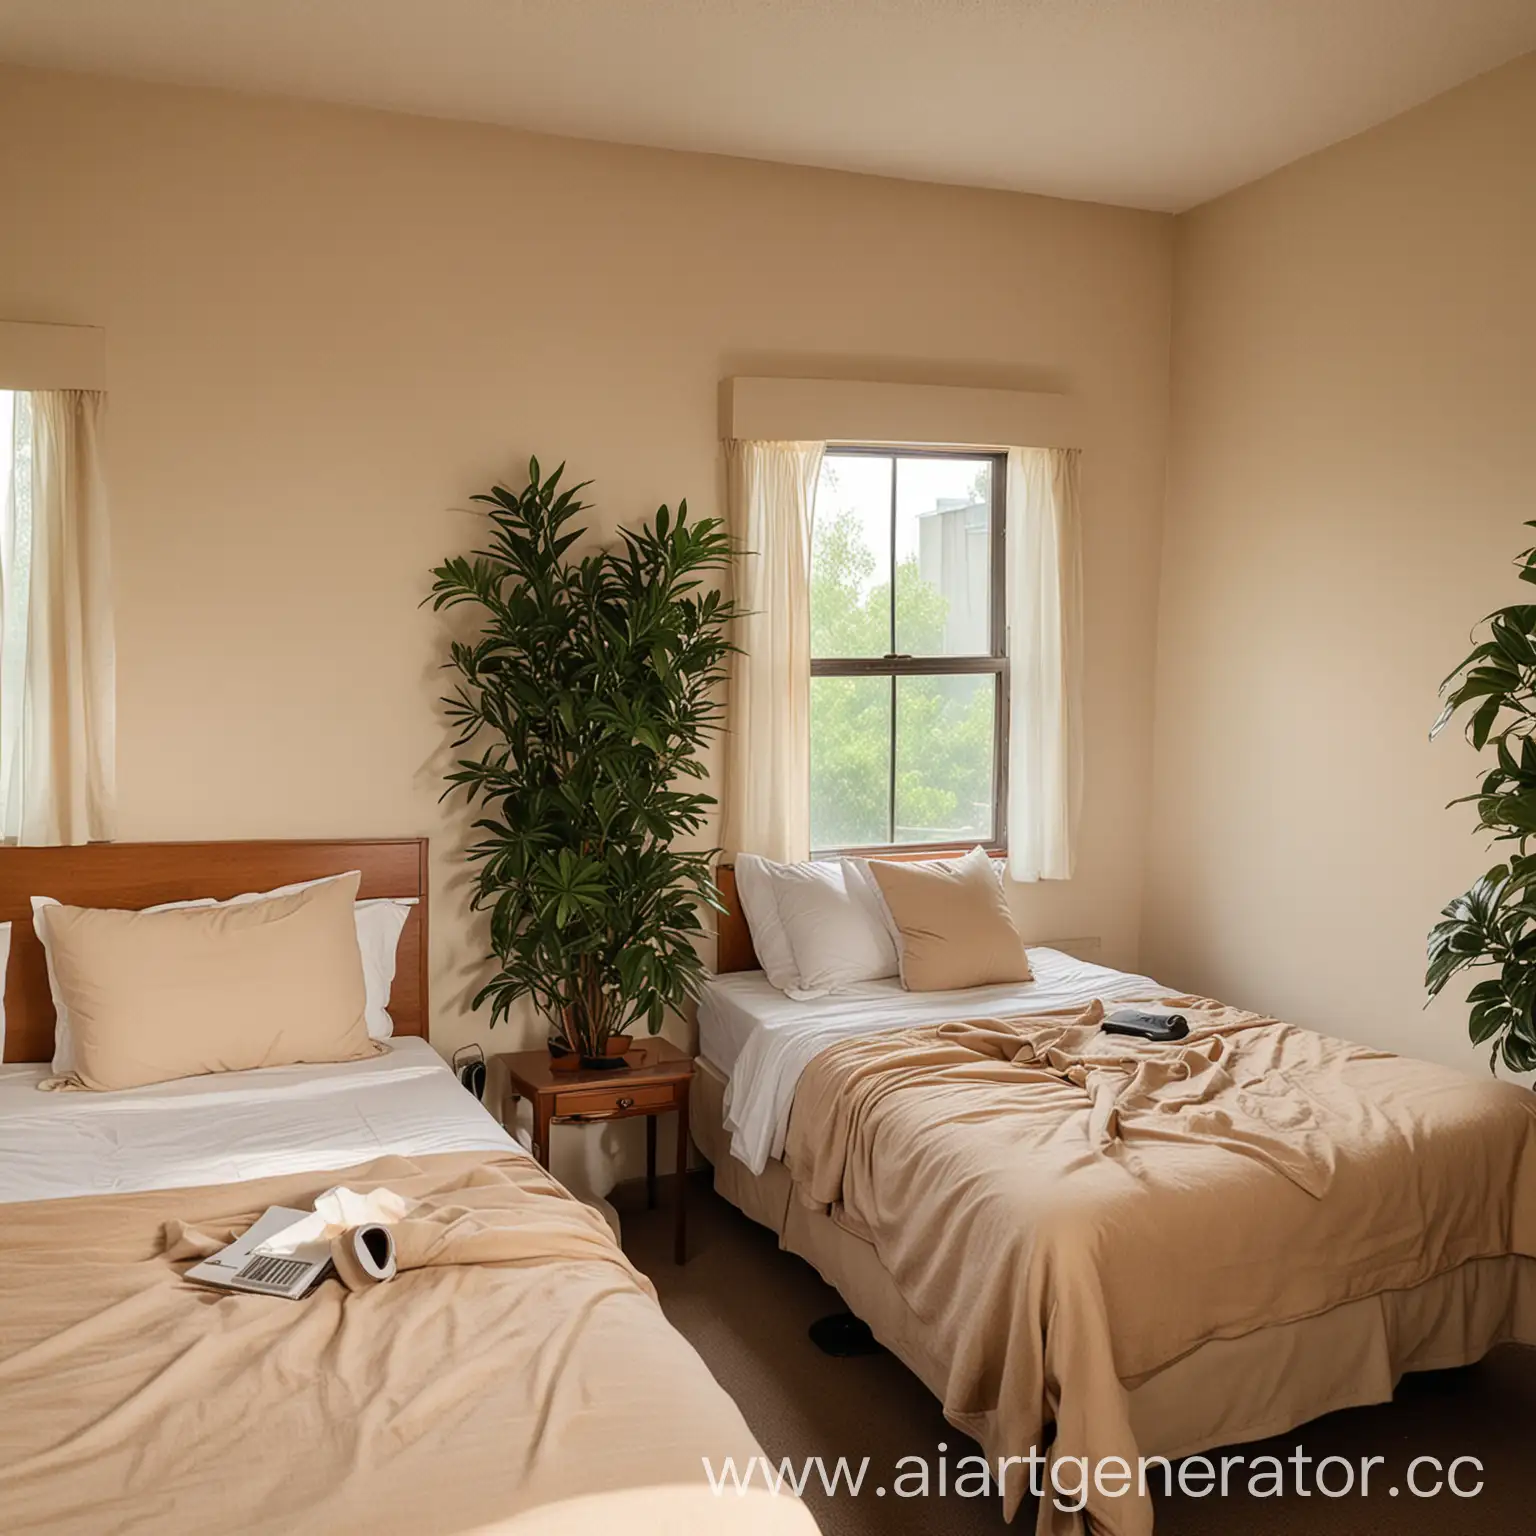 минималистичная комната мотеля с двумя кроватями и бежевыми стенами, тумбочка между кроватями, кровати заправлены и на них подушки, в углу комнаты письменный стол с креслом неподалеку, окно над столом из которого видну листву